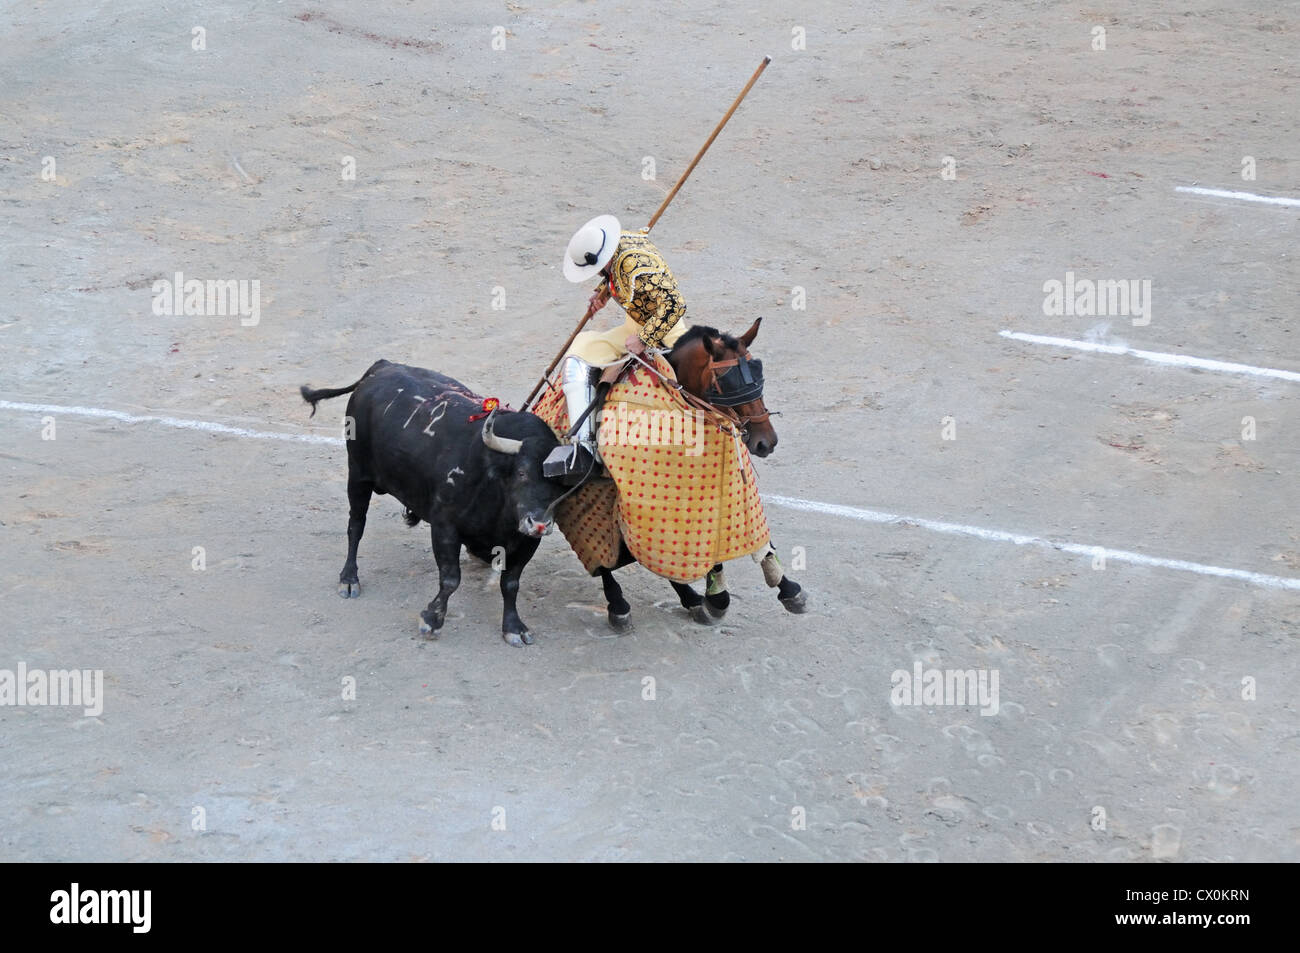 Picador monté sur l'protégés par des lances Pelo bull en arène romaine amphithéâtre ou à Arles France en corrida Corrida Banque D'Images